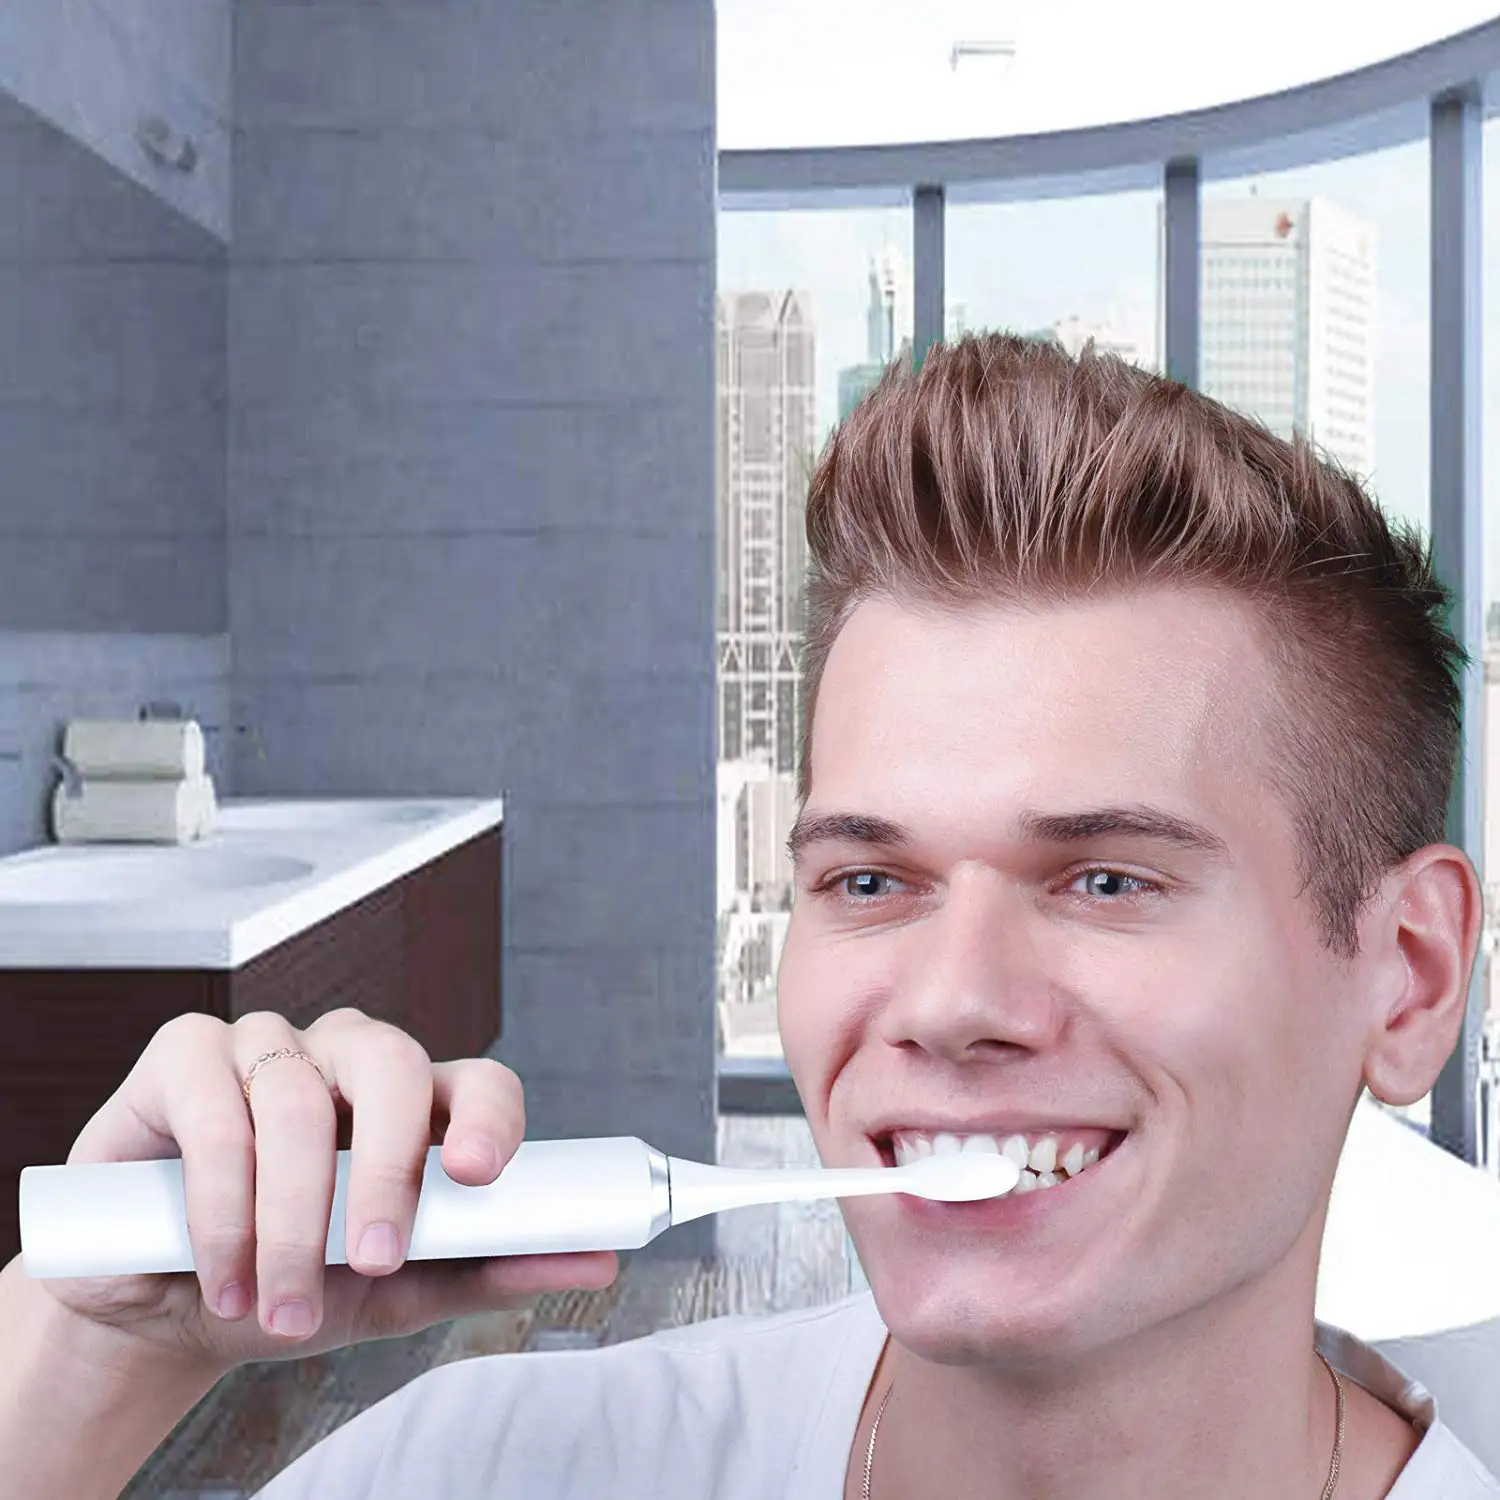 Lachen RM-H9 двойная упаковка электрическая ультразвуковая зубная щетка, с 2 наконечниками и чехол для путешествий, 5 режимов с 10 насадками